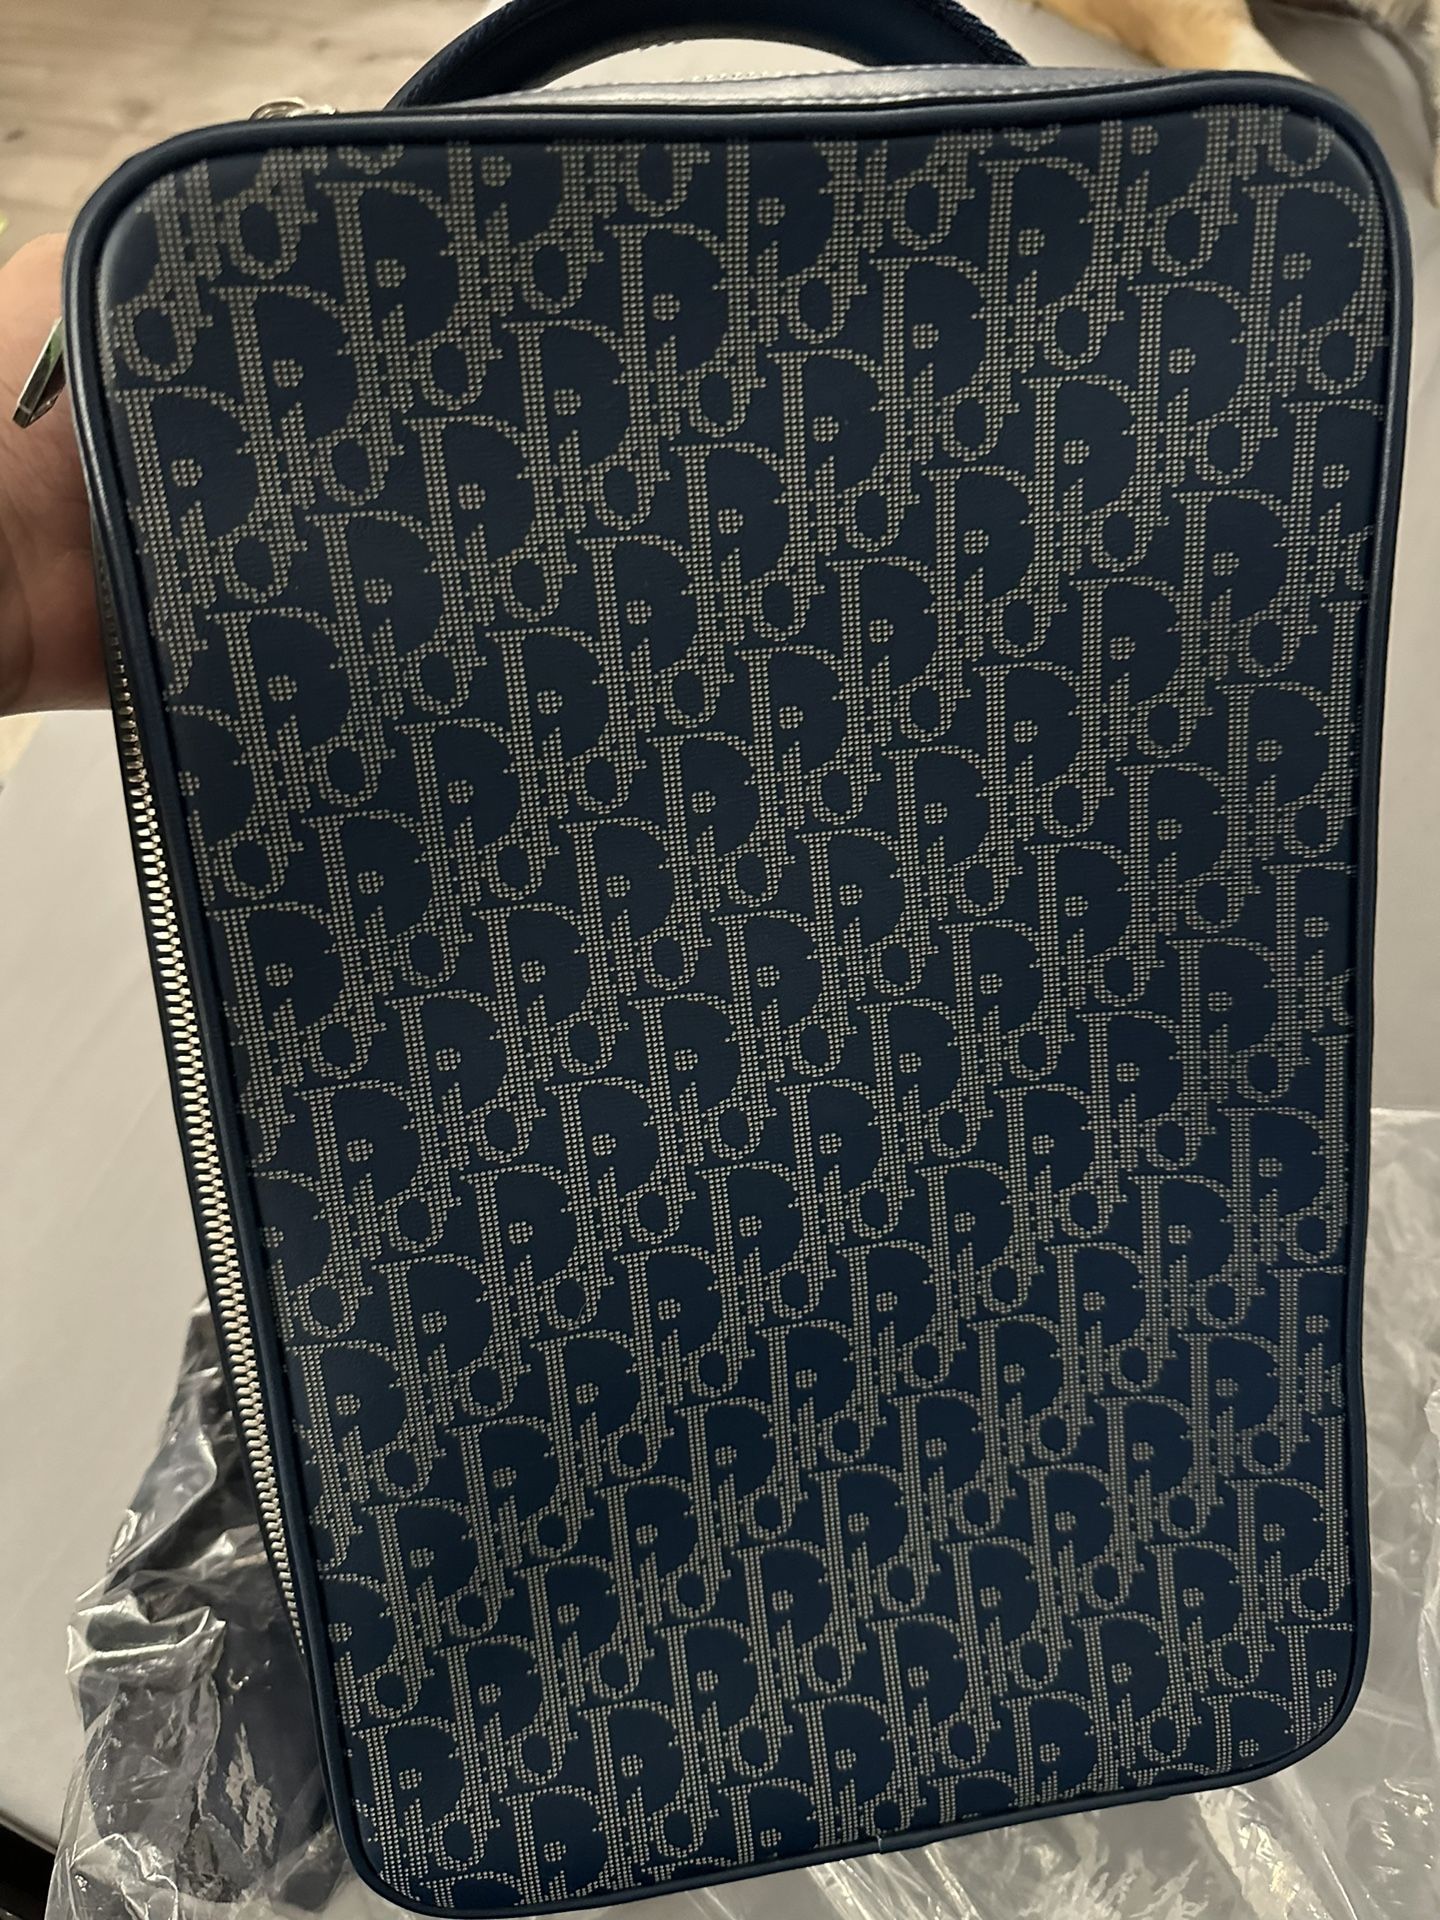 Christian Dior Galaxy Travel Bag